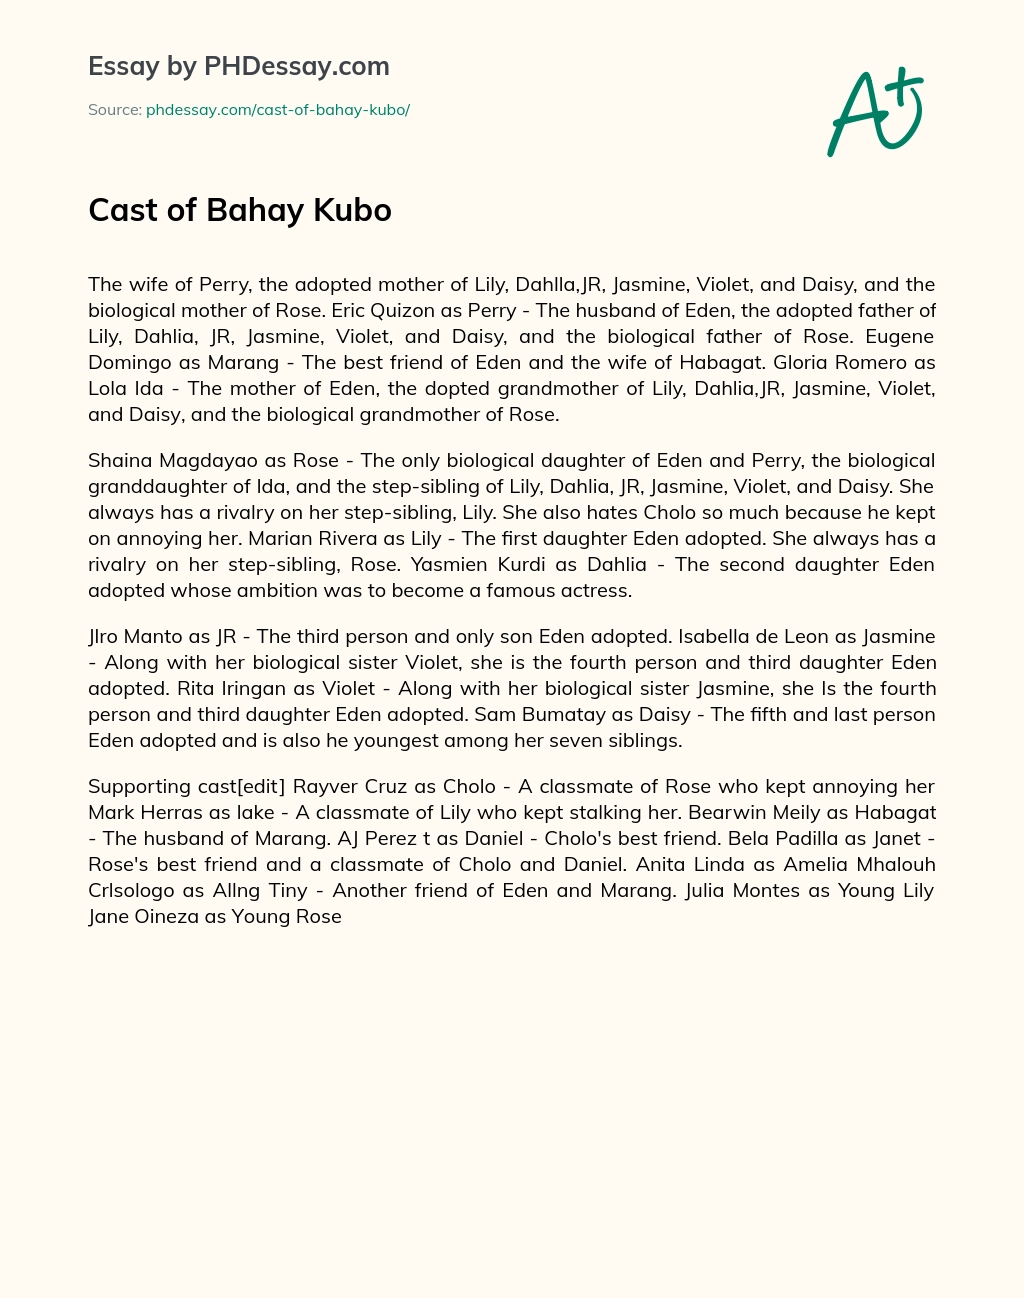 Cast of Bahay Kubo essay